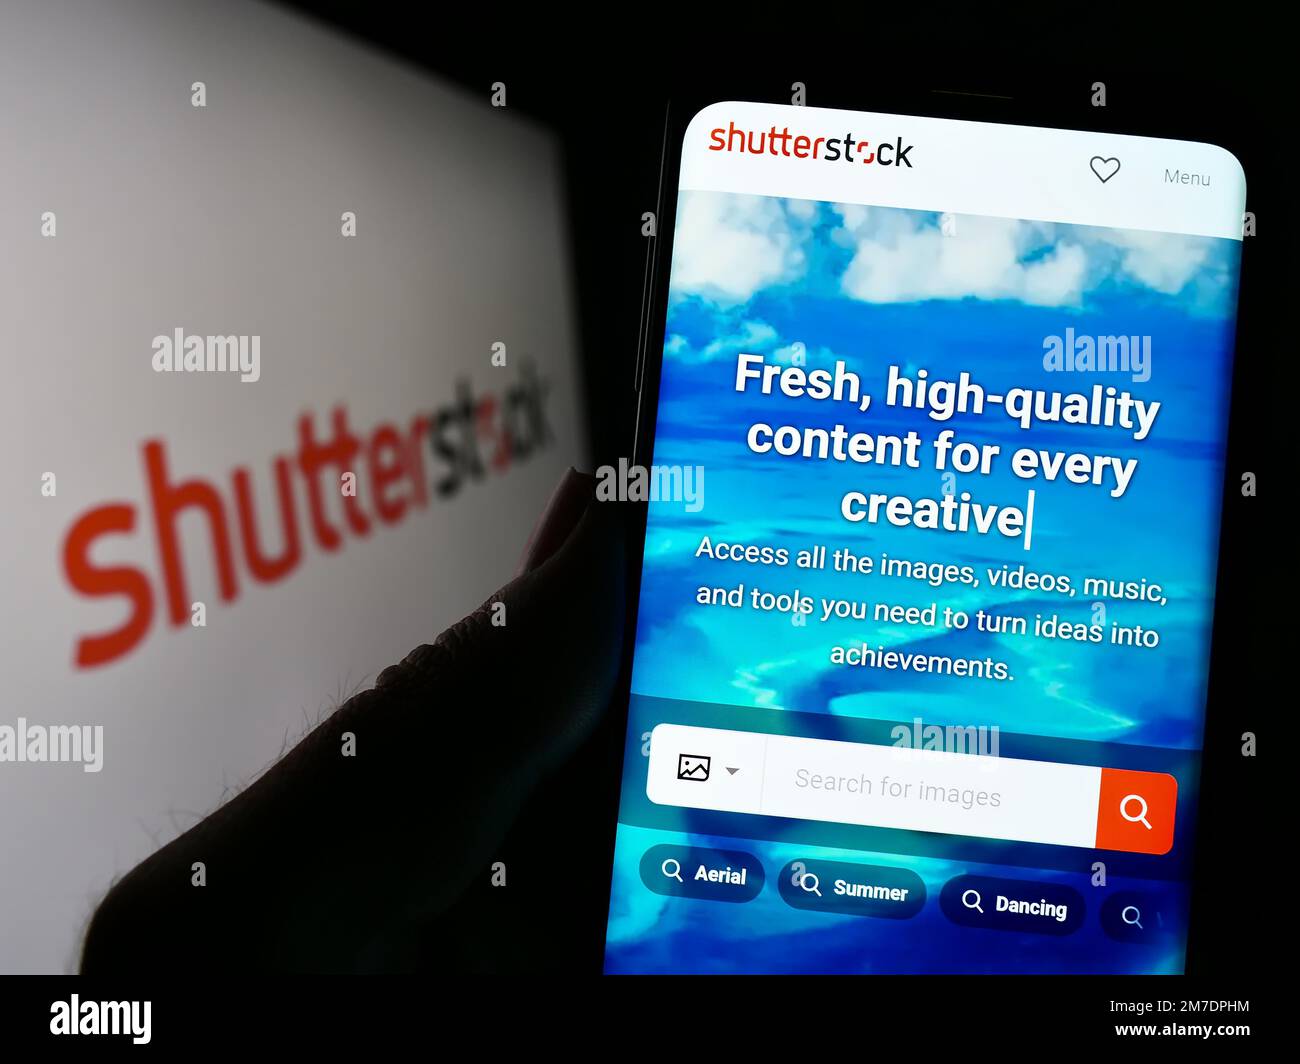 Persona che tiene il cellulare con il Web site della società di fotografia di stock degli Stati Uniti Shutterstock Inc. Sullo schermo con il marchio. Messa a fuoco al centro del display del telefono. Foto Stock